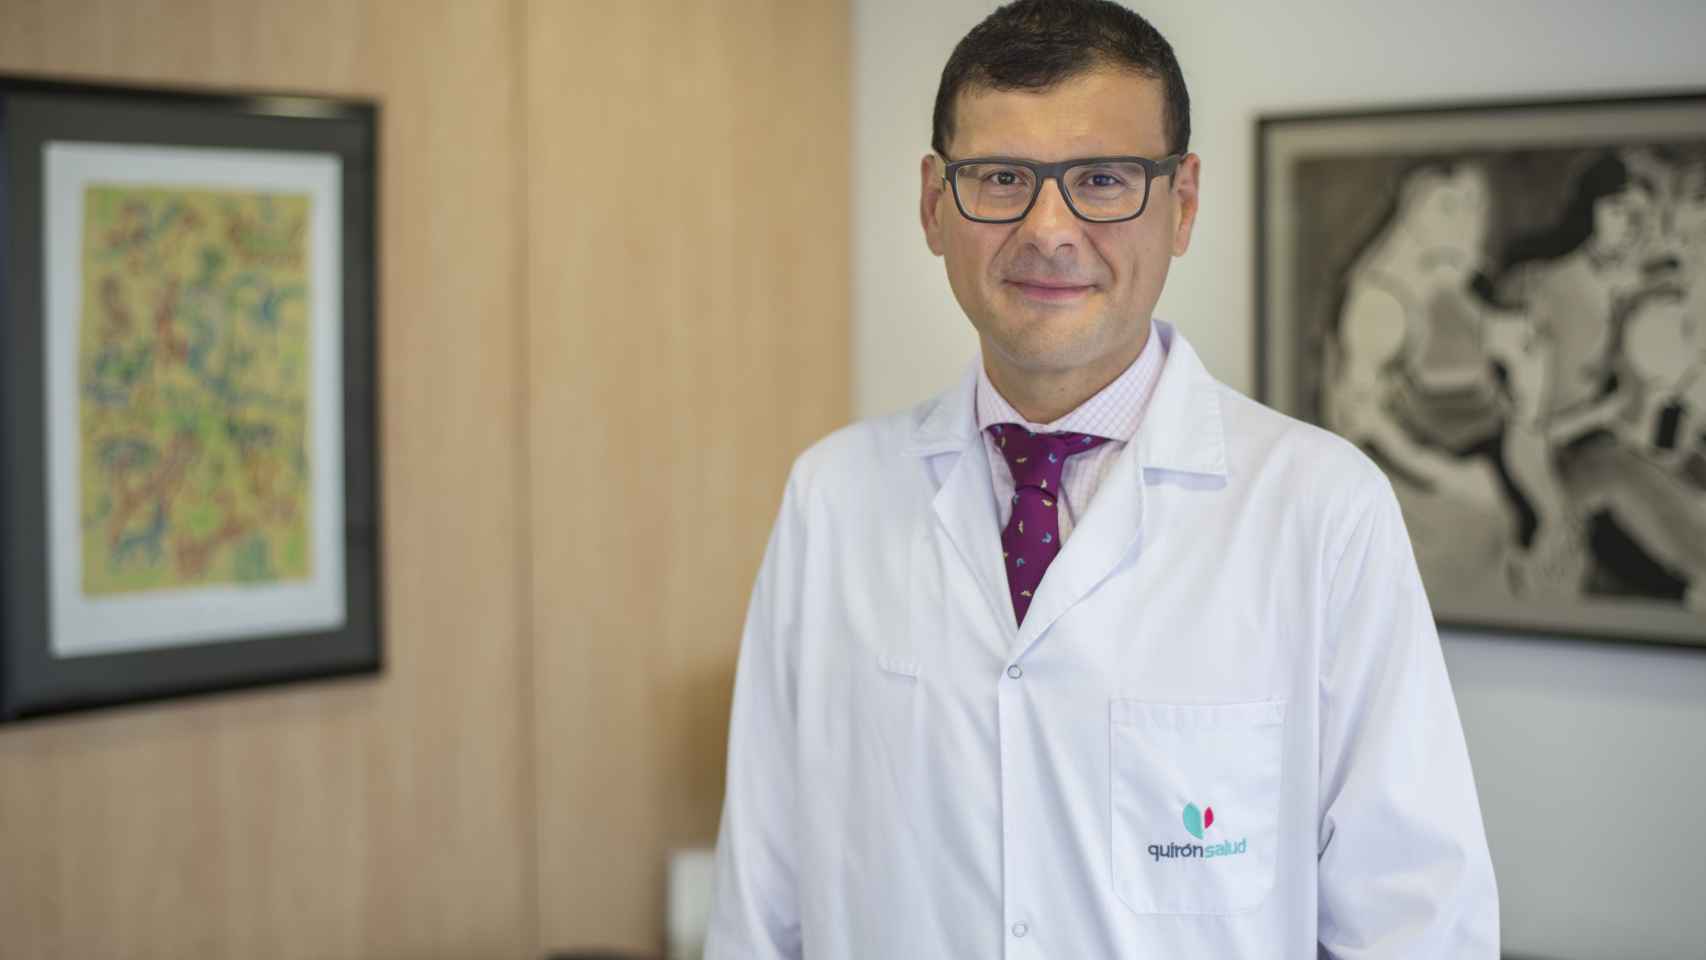 El doctor José Altamirano, hepatólogo y facultativo del Servicio de Medicina Interna del Hospital Quirónsalud Barcelona